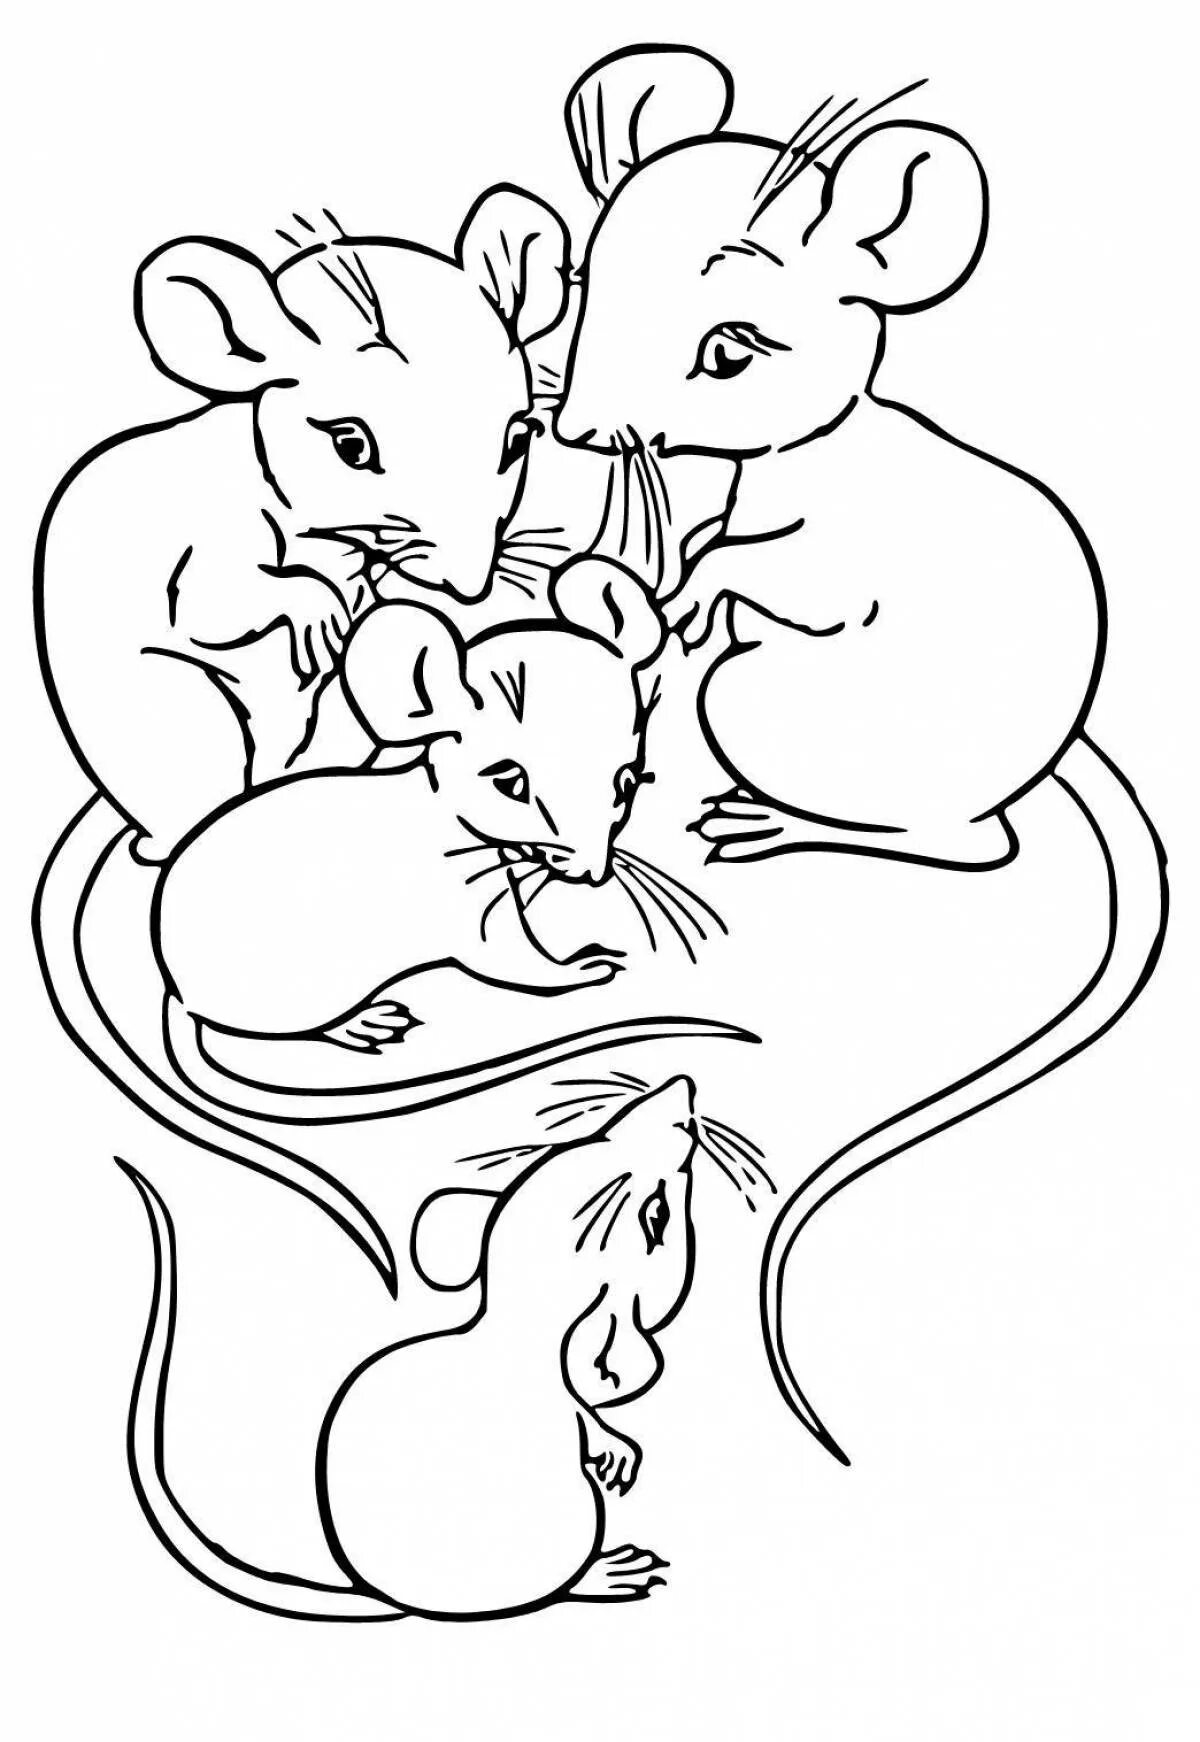 Раскраска мышка. Мышь раскраска для детей. Раскраска мышонок. Мышка раскраска для детей. Раскраска мышь распечатать